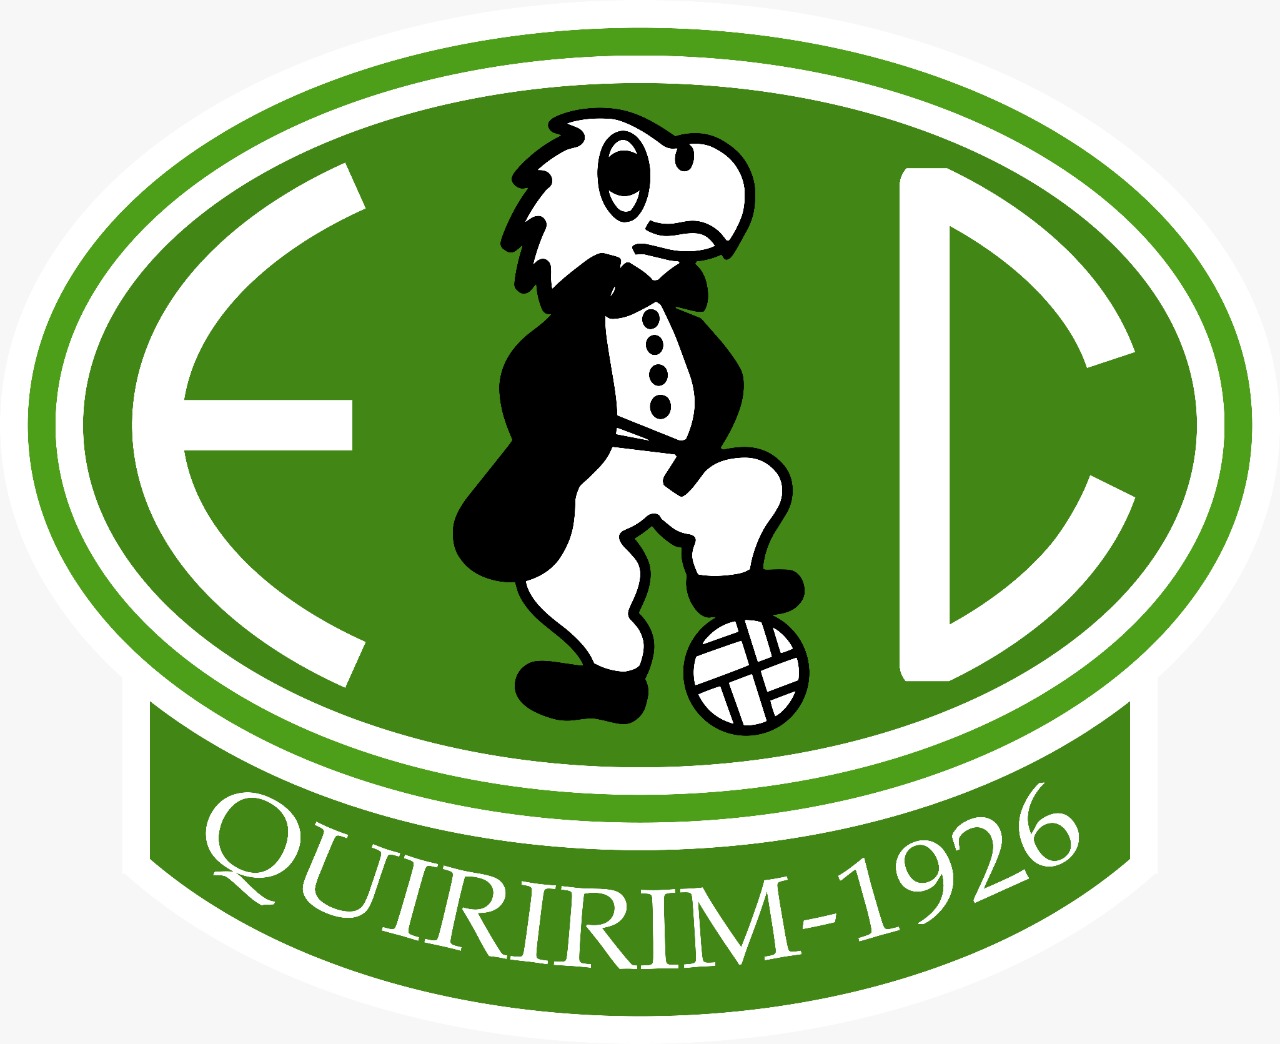 EC Quiririm